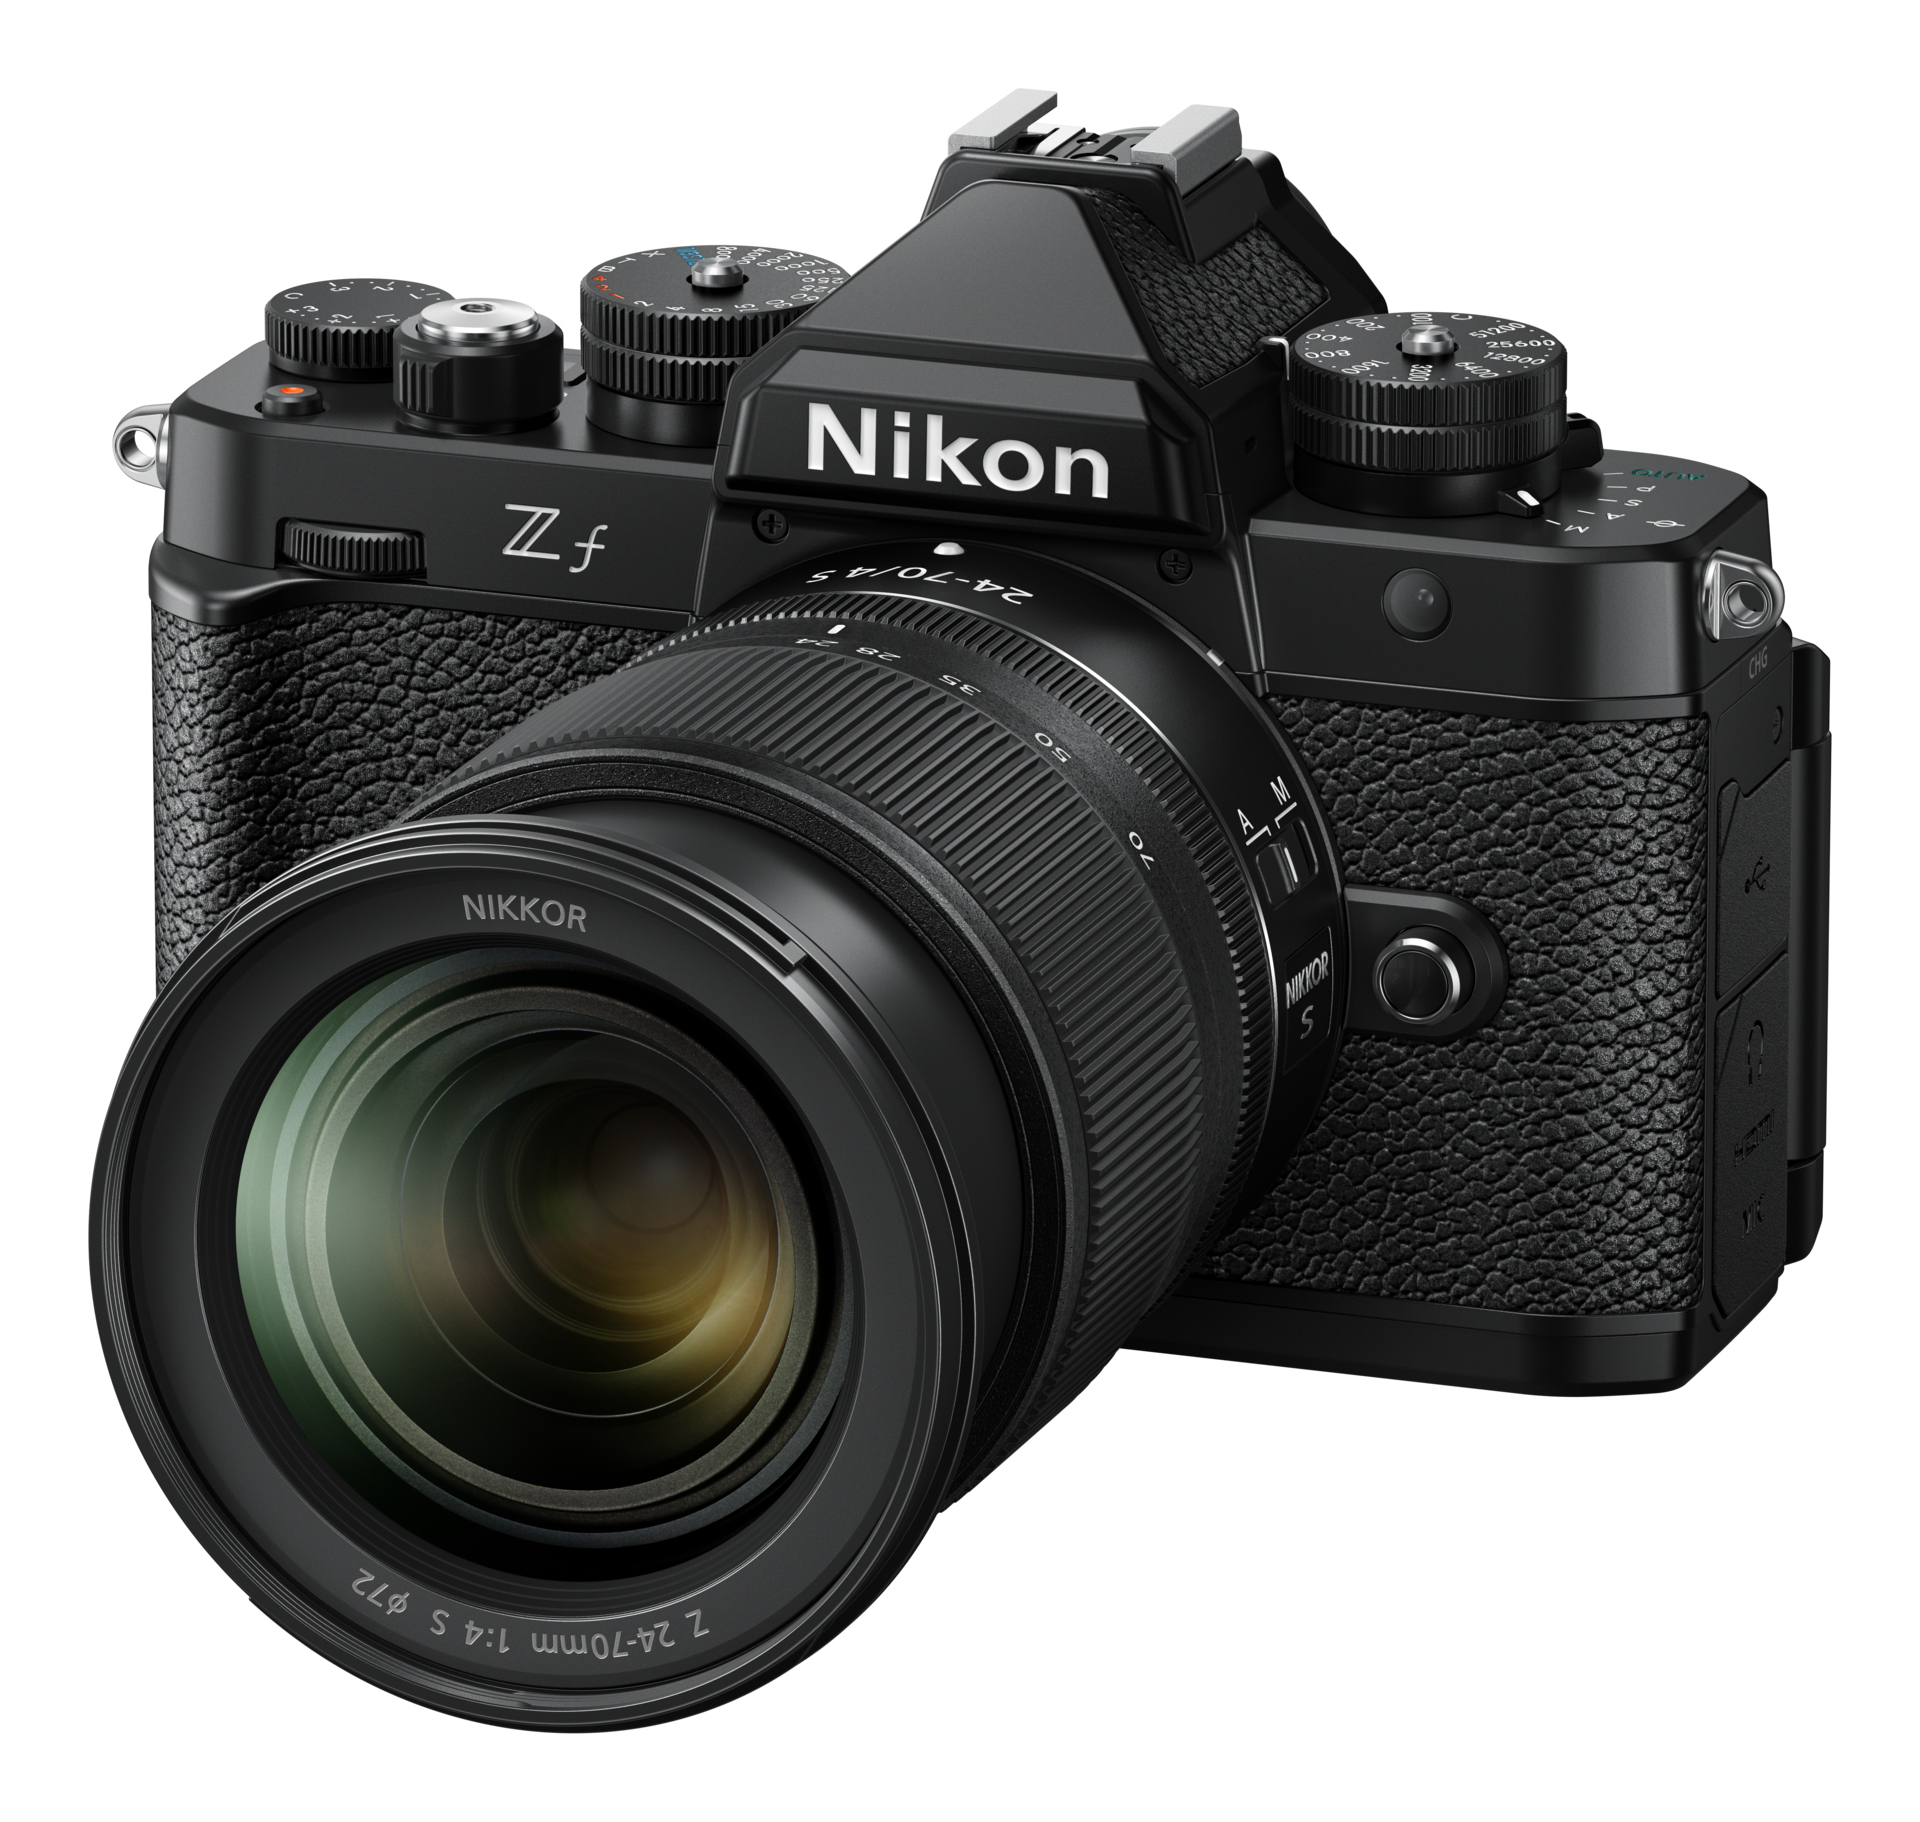 Nikon Z f + NIKKOR Z 24-70mm f/4 S